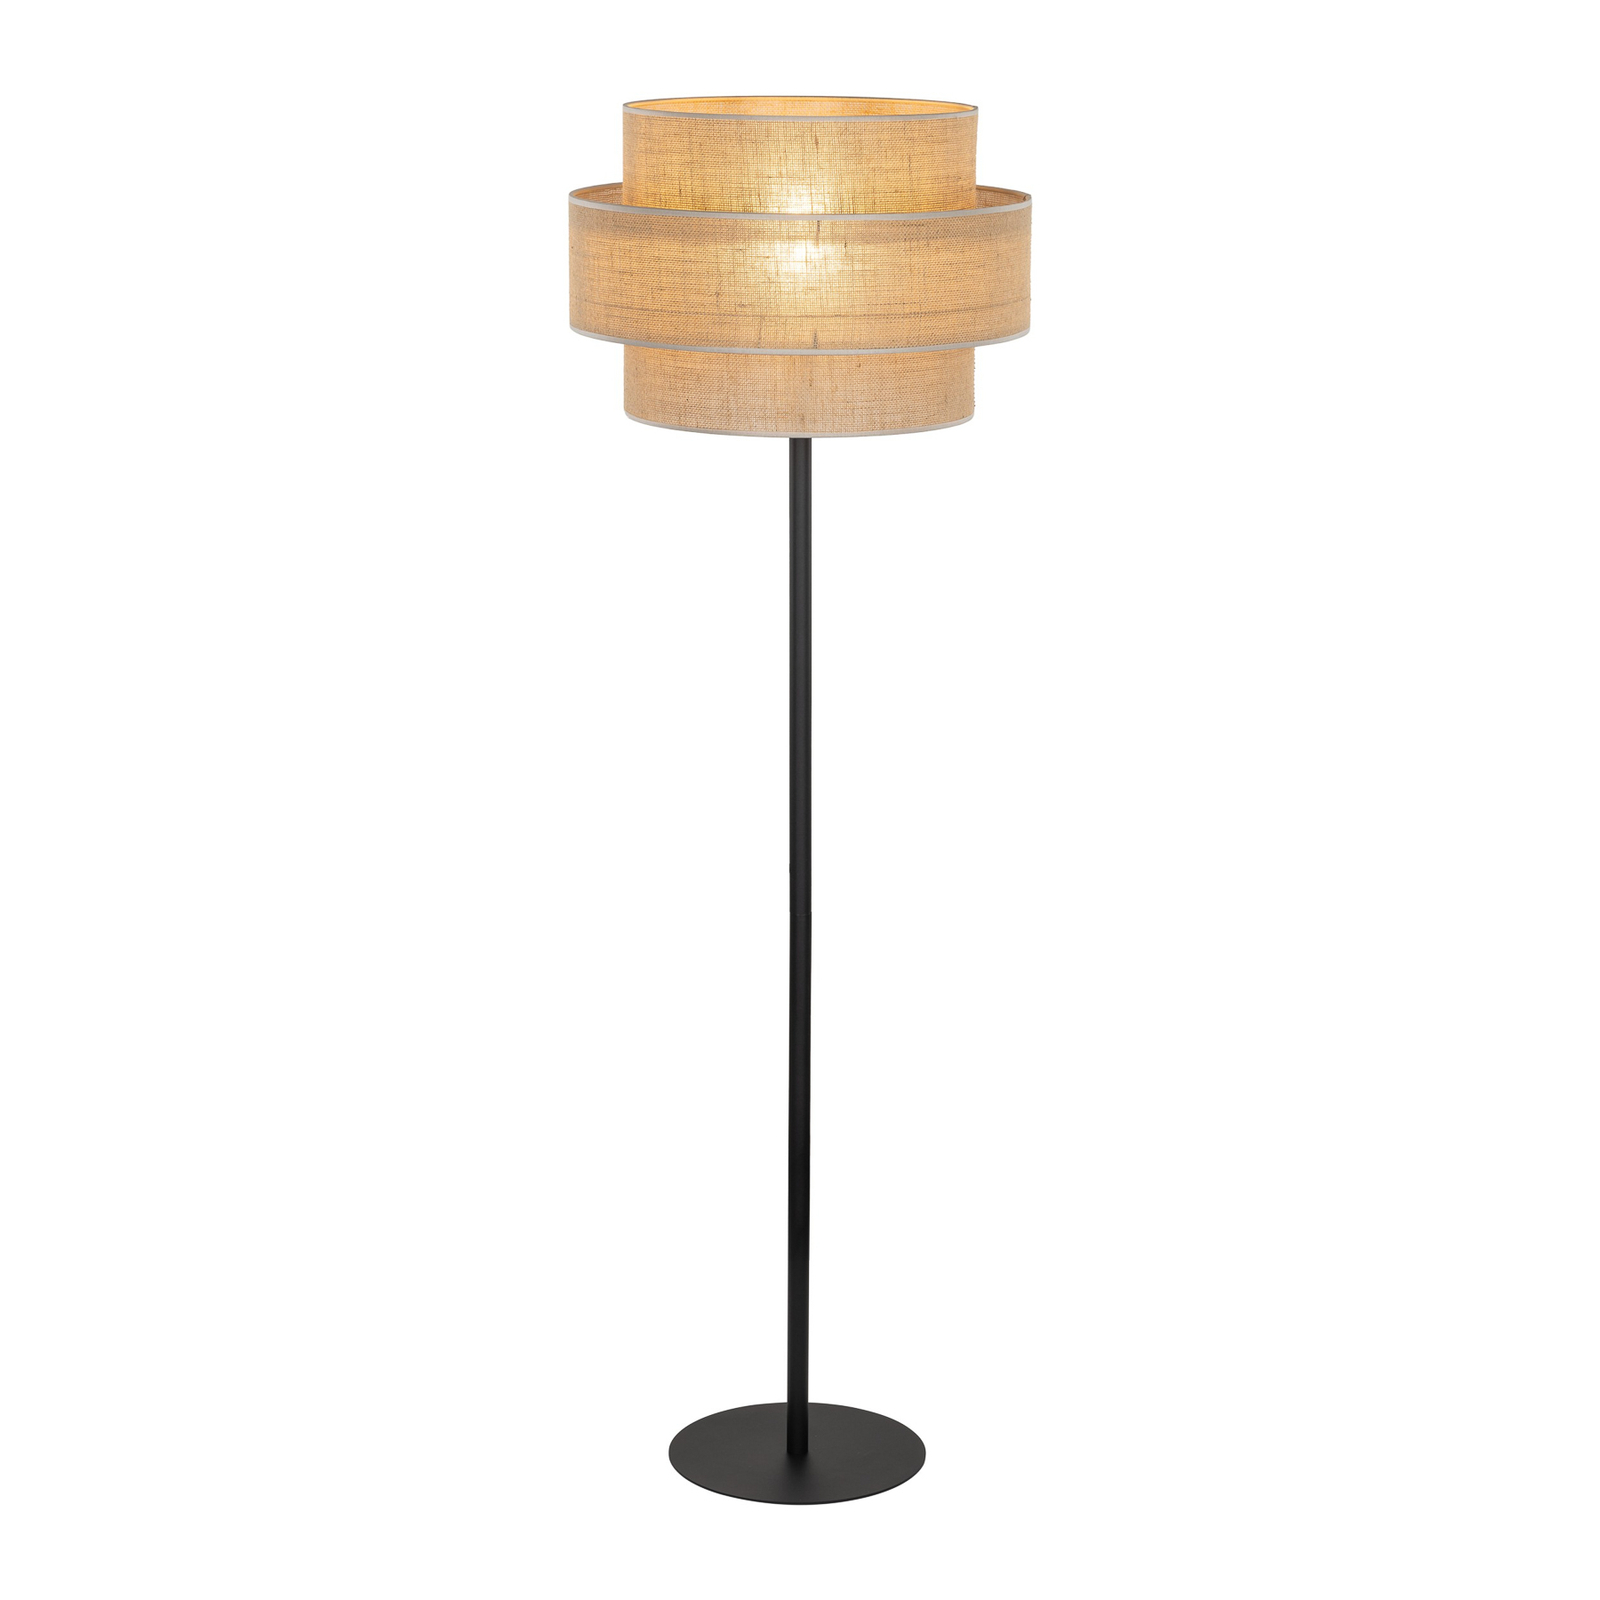 Lampa stojąca Calisto, juta, cylinder, naturalny brąz, wysokość 155 cm